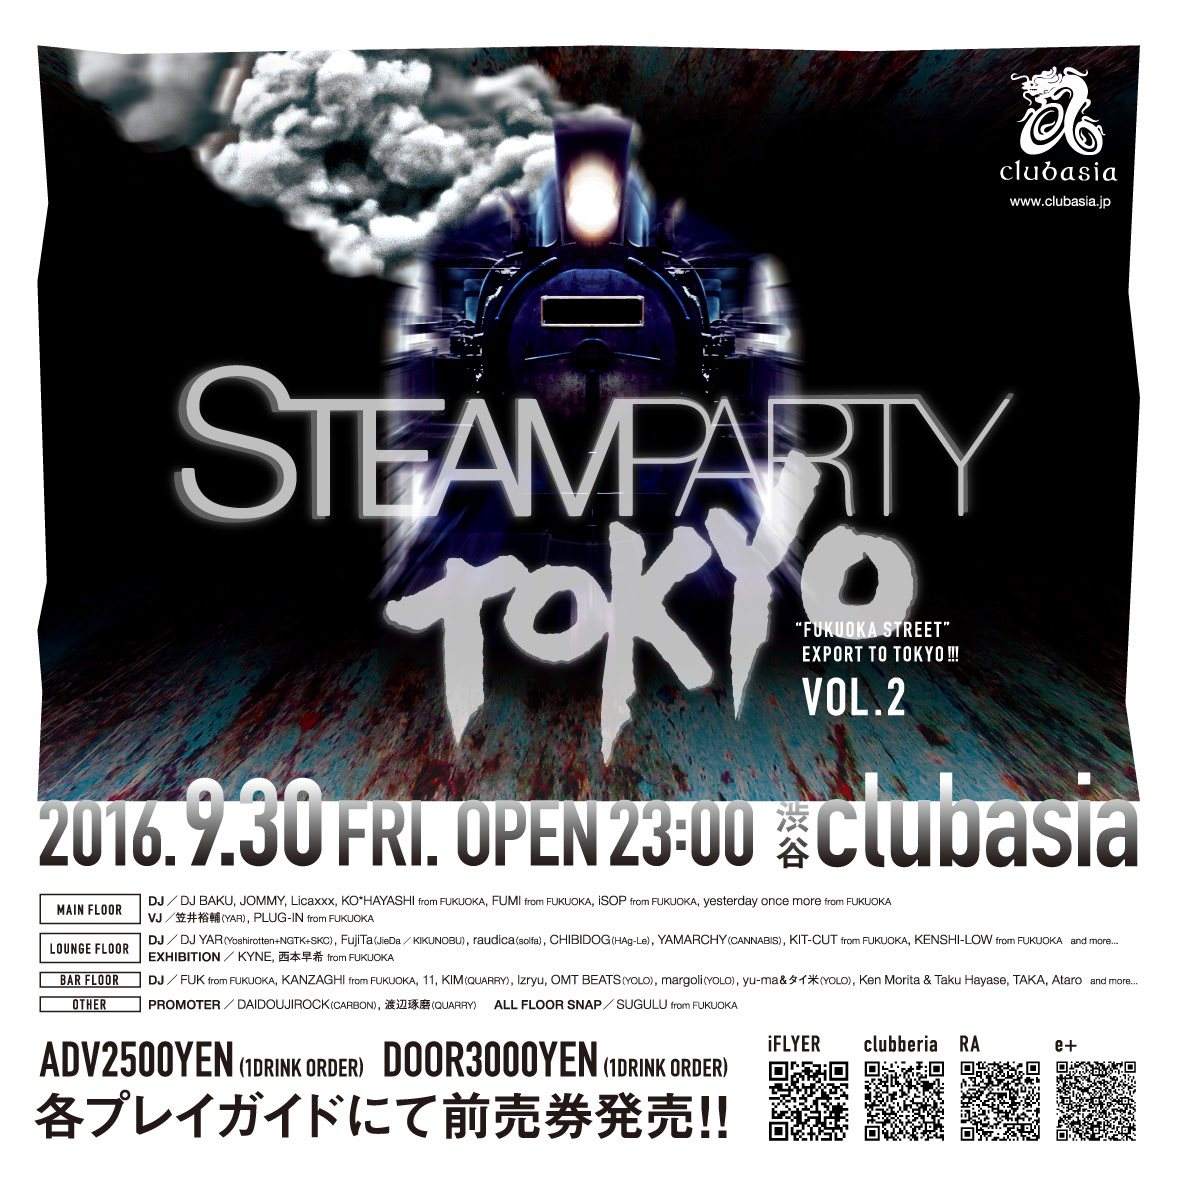 Steam Party in Tokyo vol.2 〜“FUKUOKA STREET” Export to Tokyo!〜 - Flyer front